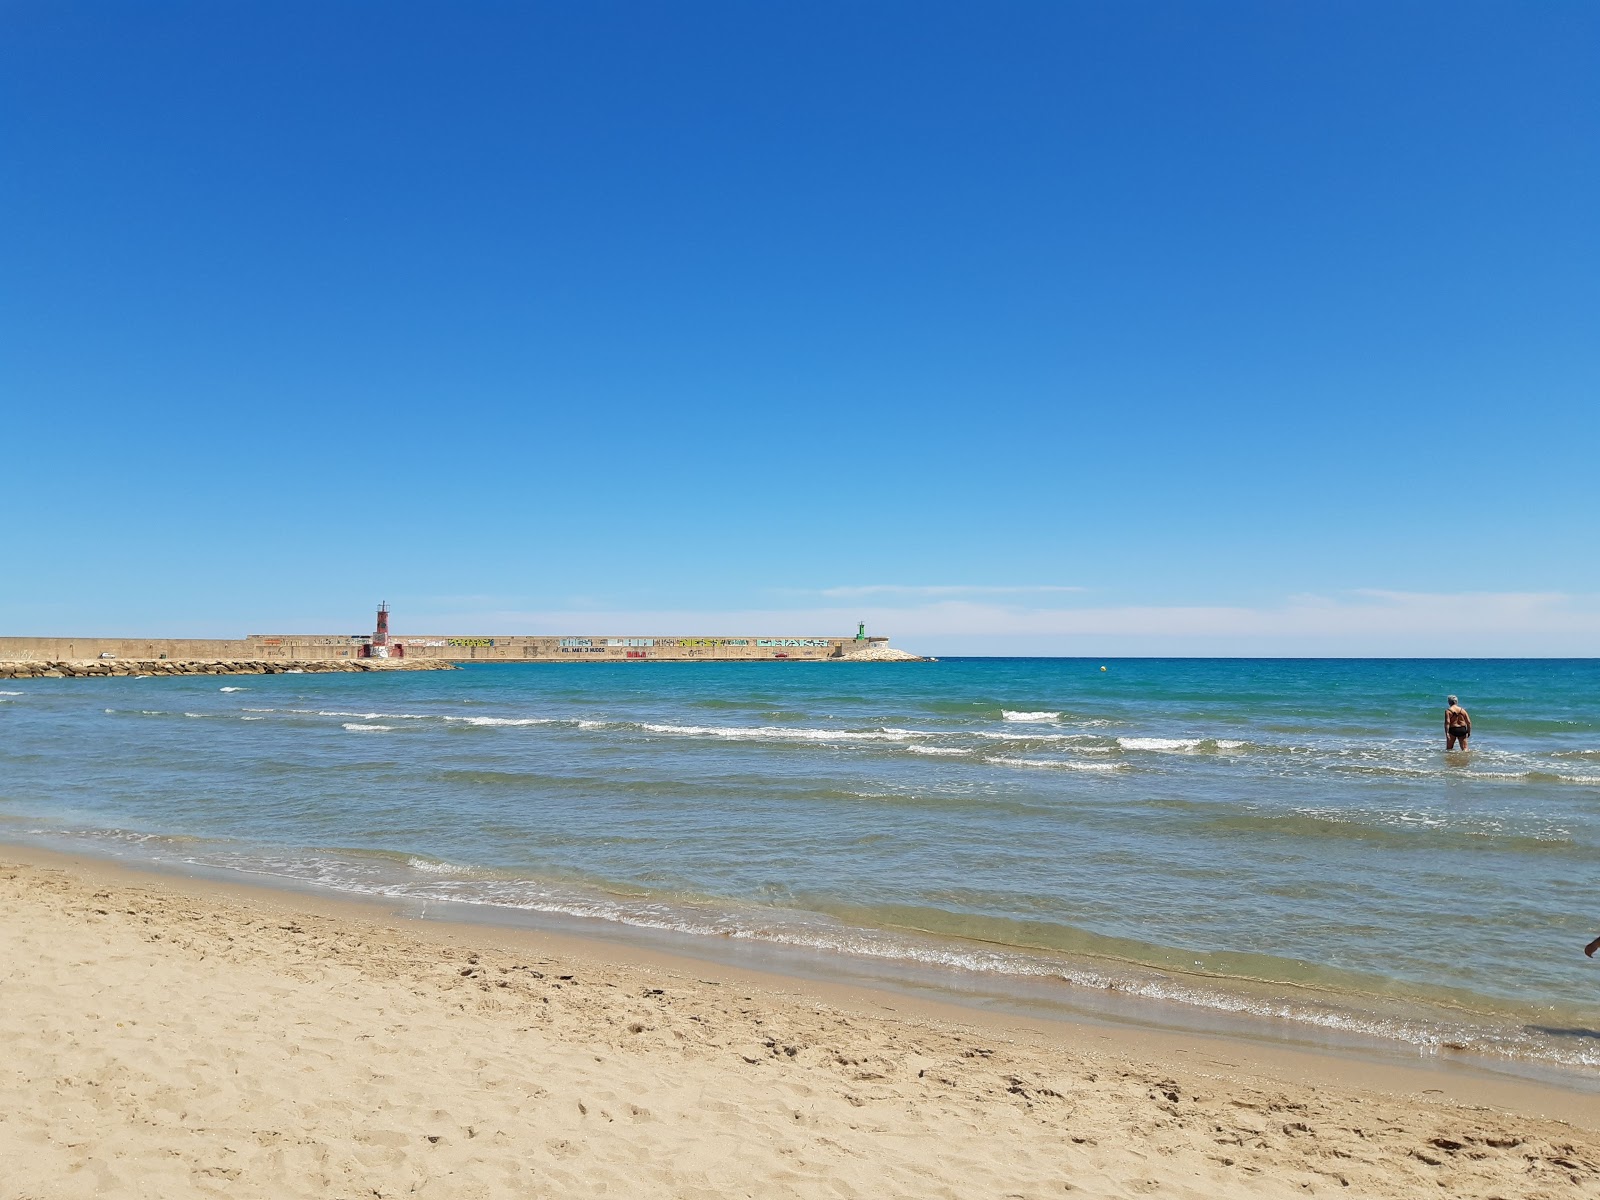 Playa del Morrongo 2'in fotoğrafı kahverengi kum yüzey ile